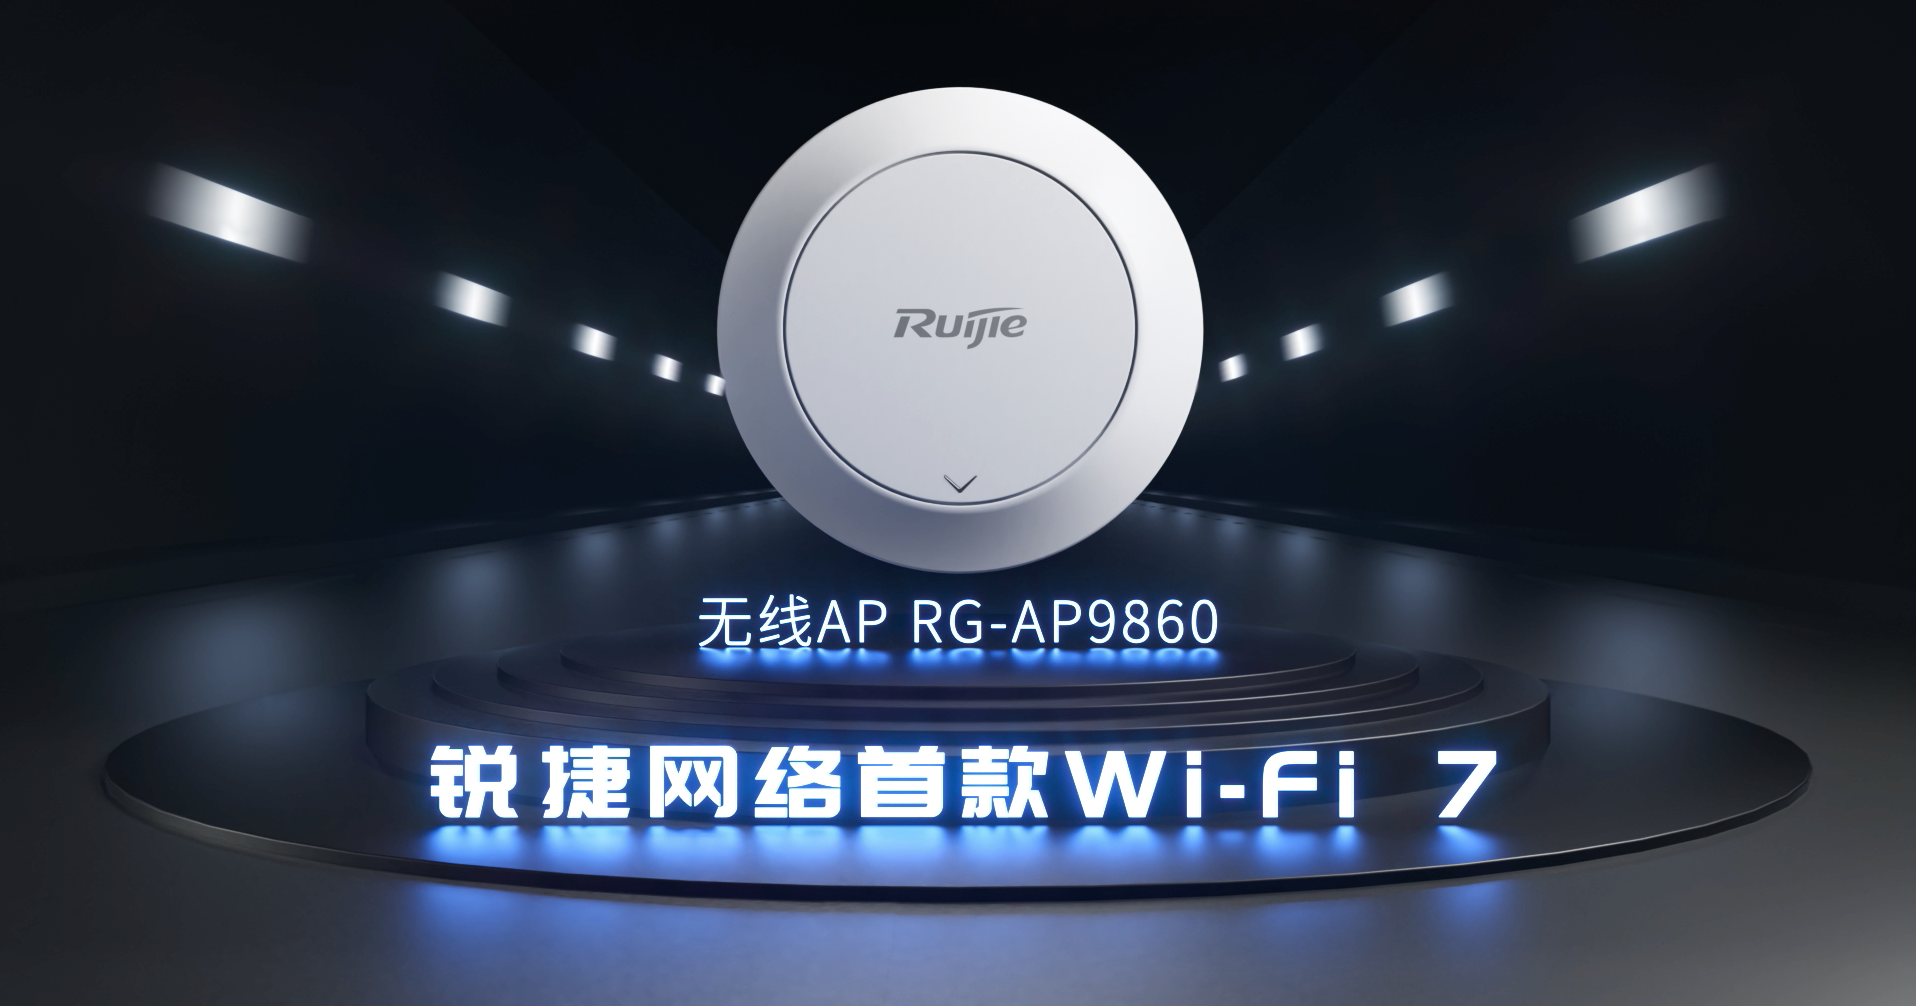 无线- 锐捷Wi-Fi 7新品 RG-AP9860视频